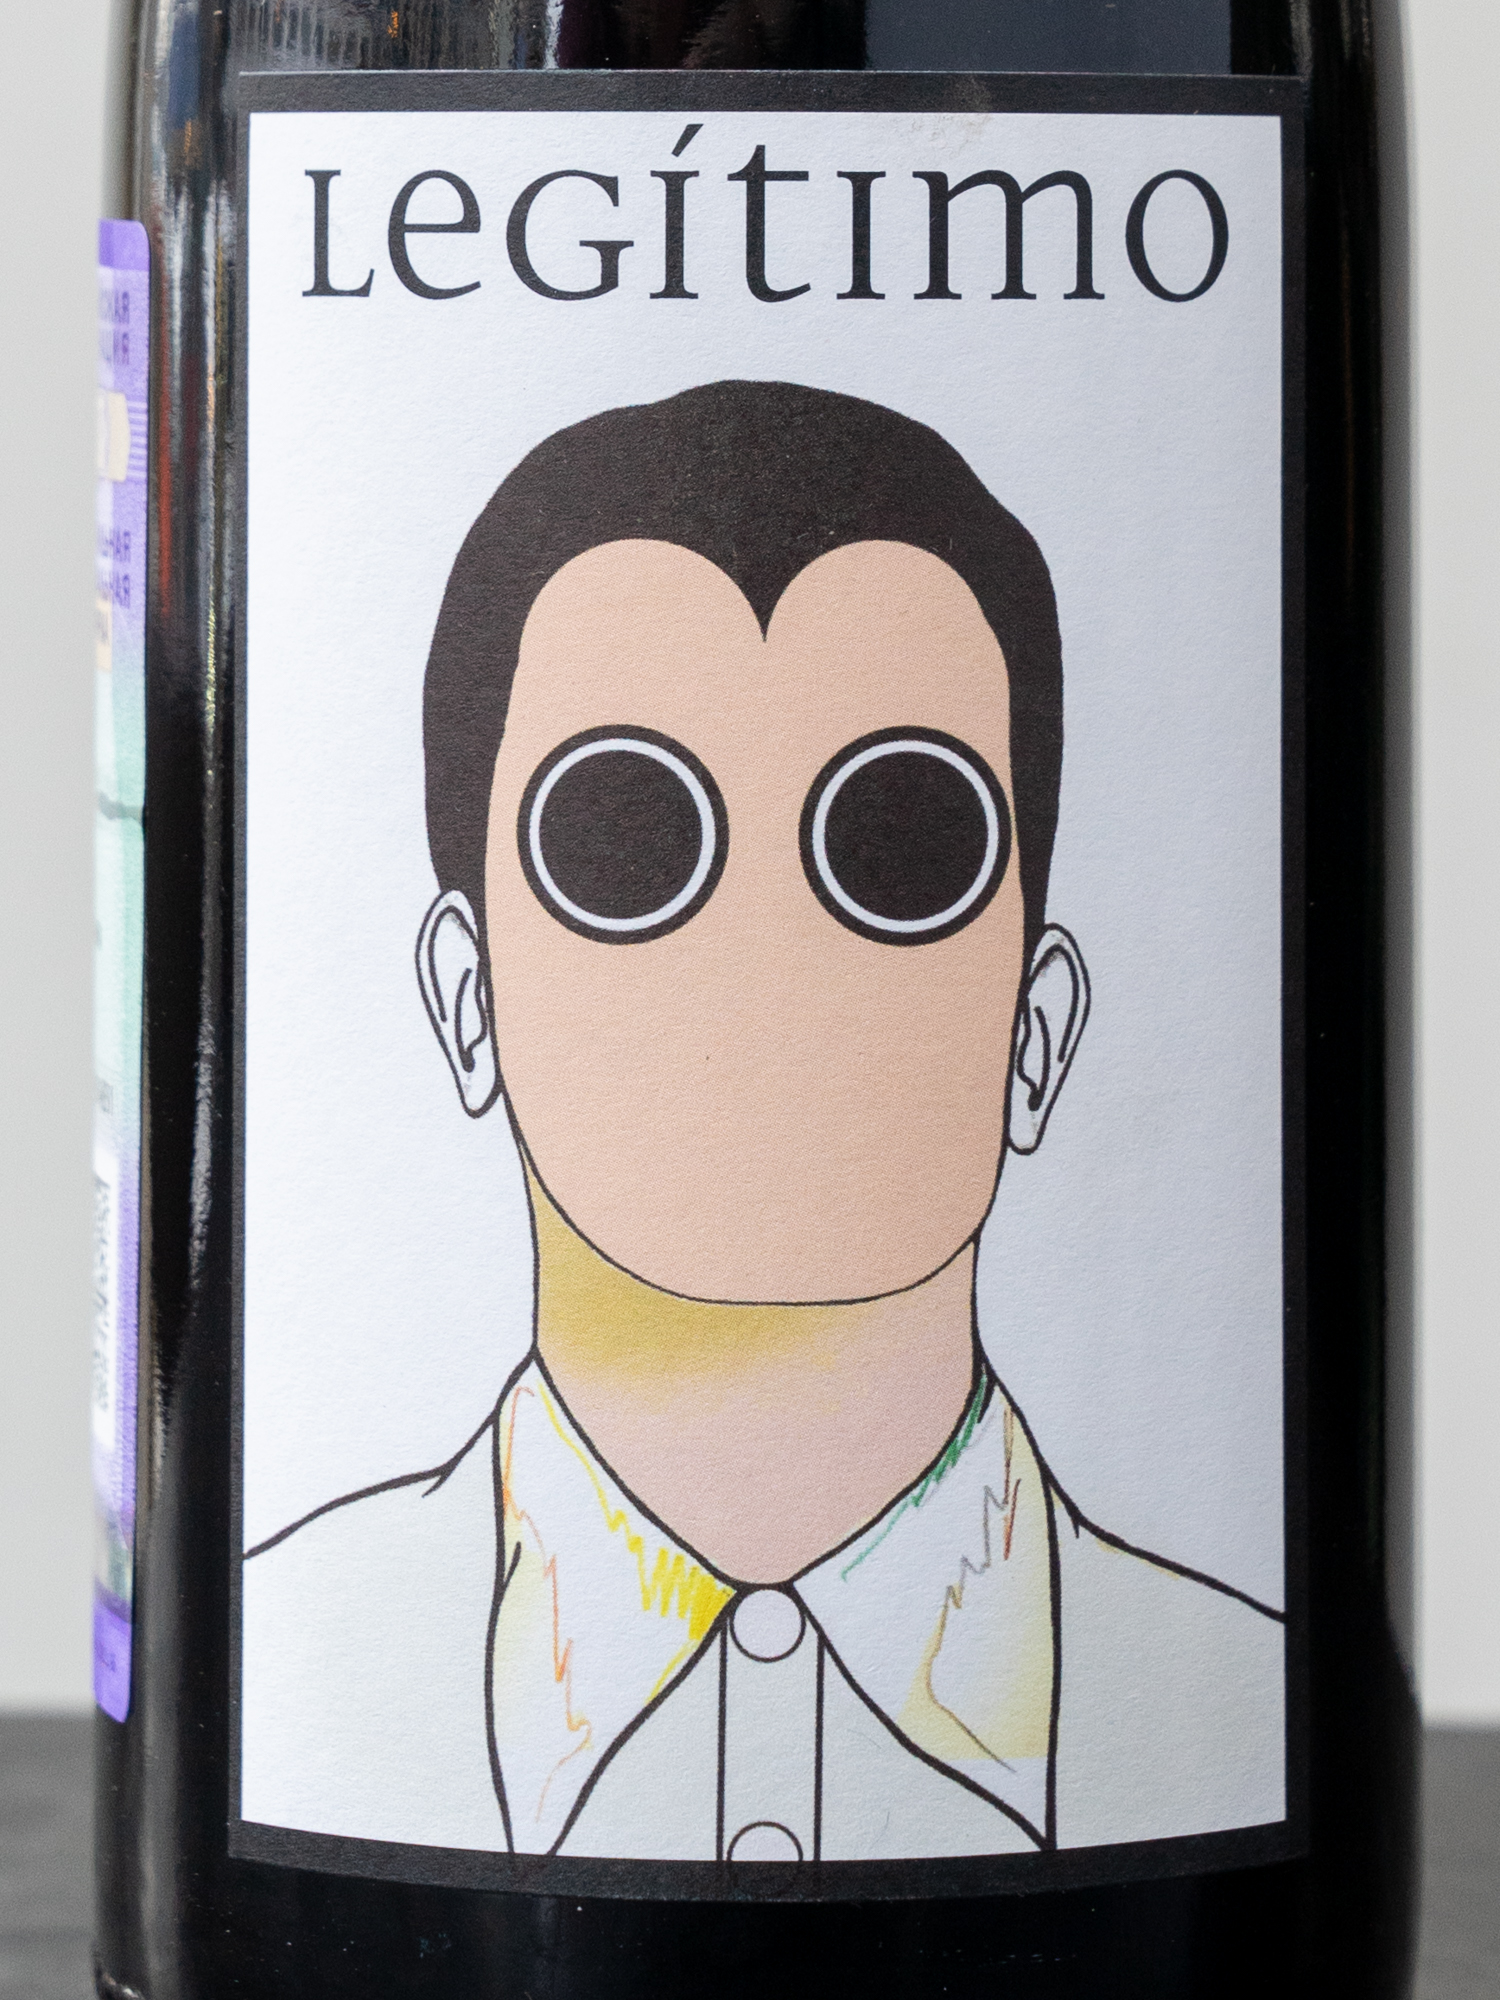 Вино Conceito Legitimo Douro / Консейто Легитимо